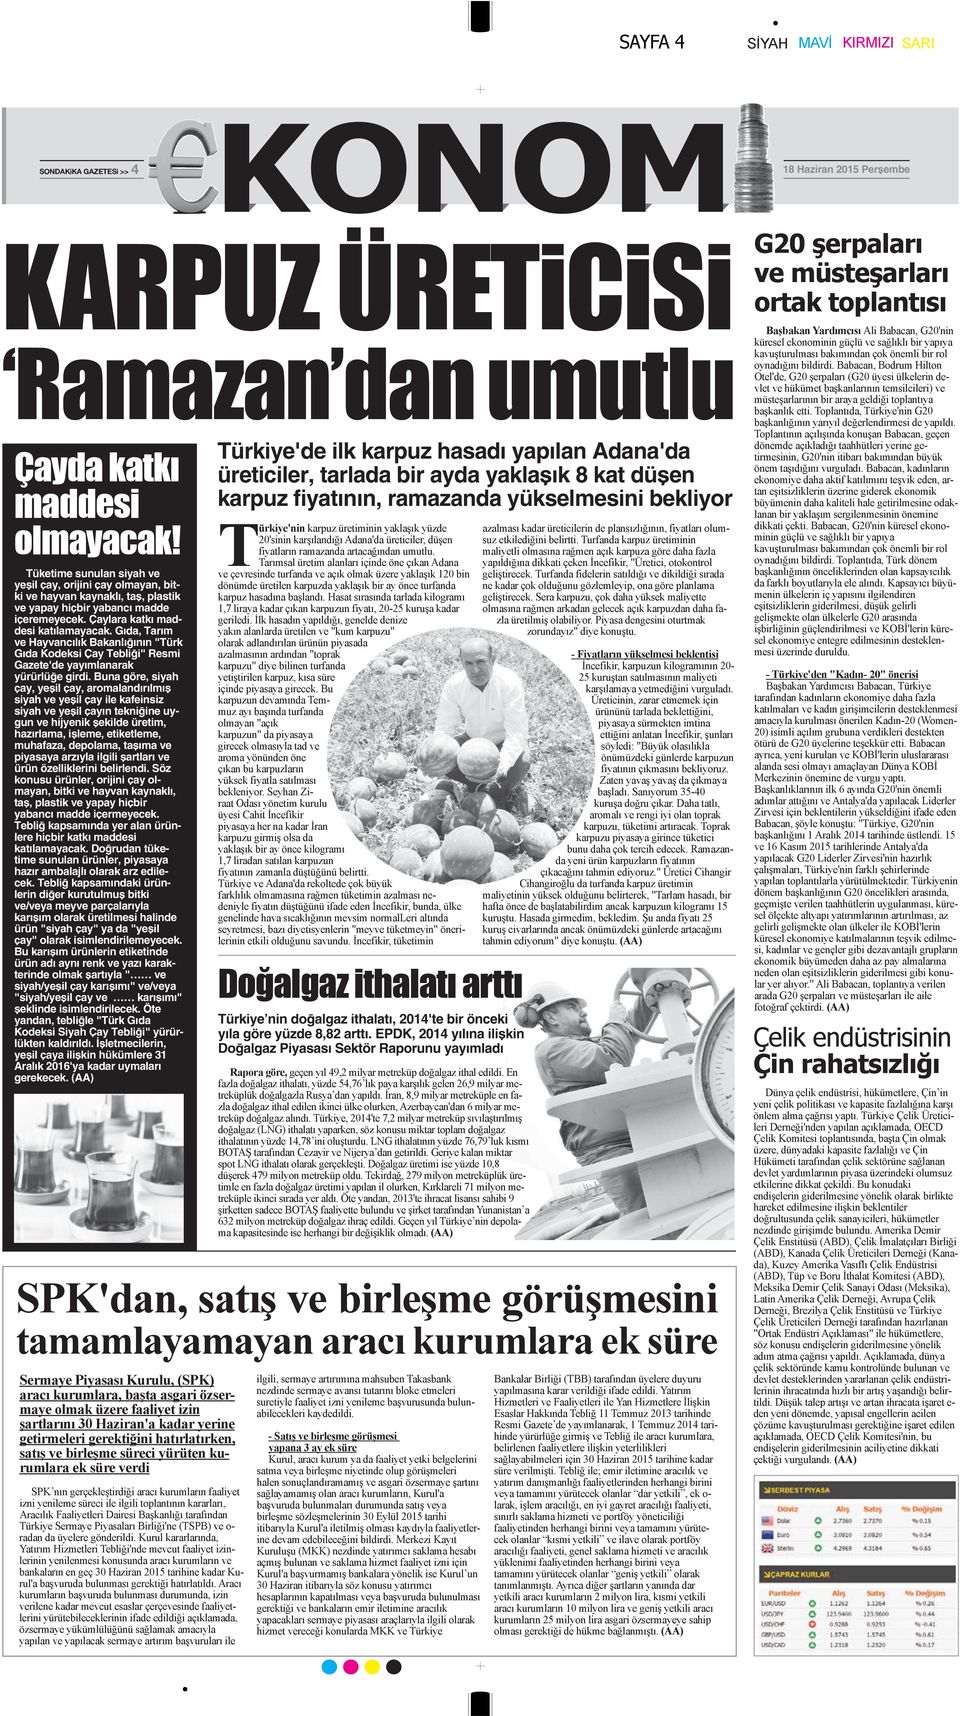 Gıda, Tarım ve Hayvancılık Bakanlığının "Türk Gıda Kodeksi Çay Tebliği" Resmi Gazete'de yayımlanarak yürürlüğe girdi.